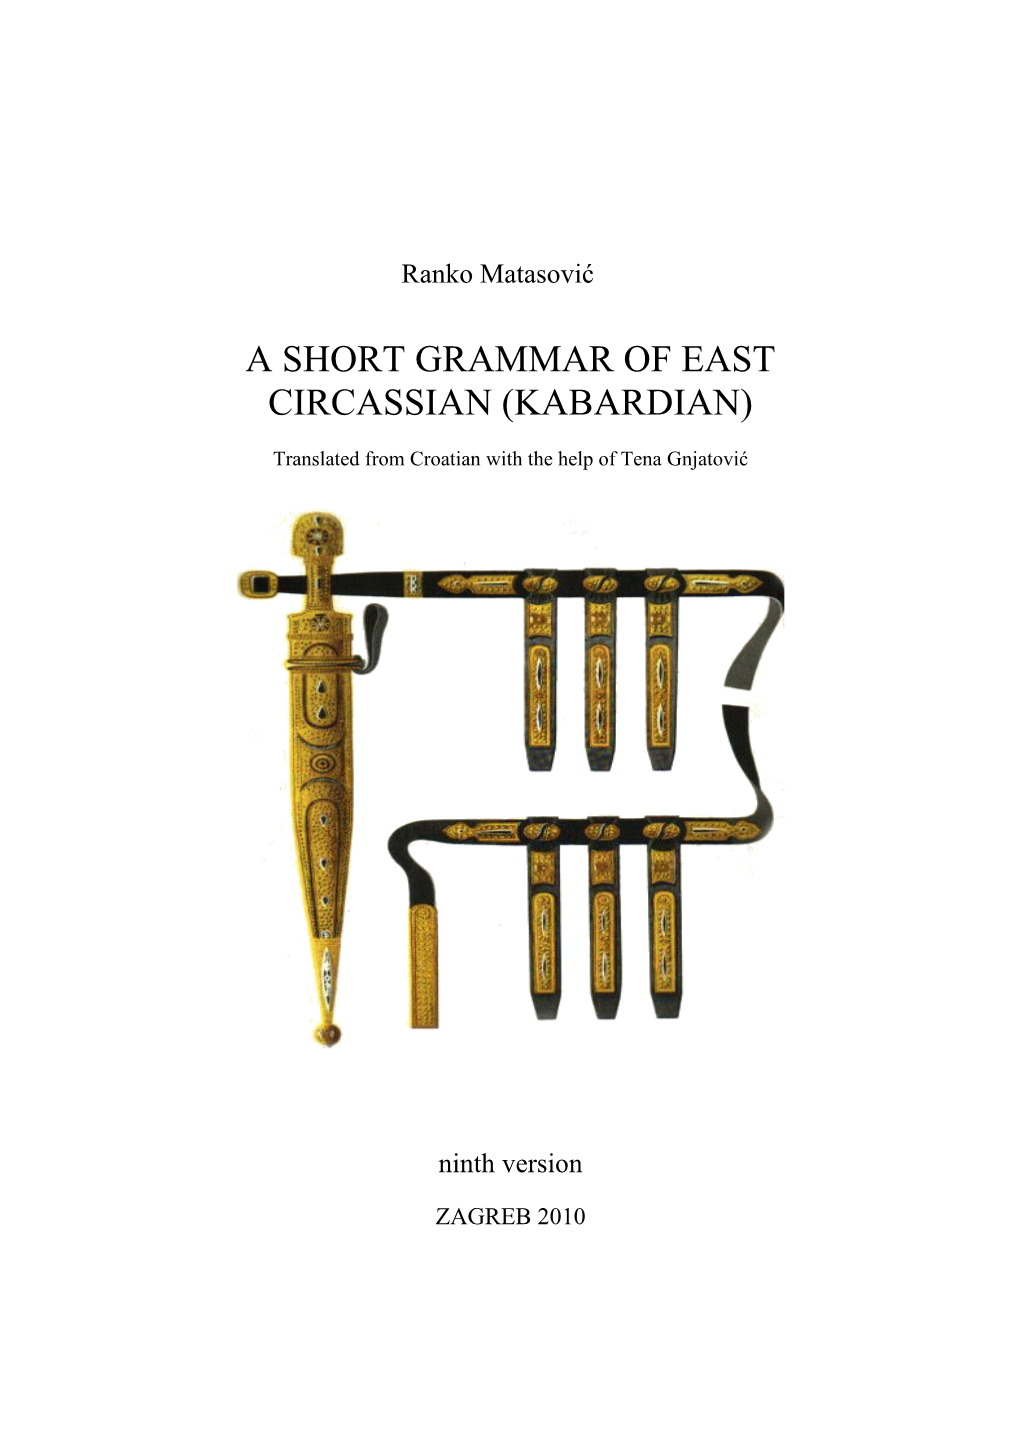 A Short Grammar of East Circassian (Kabardian)